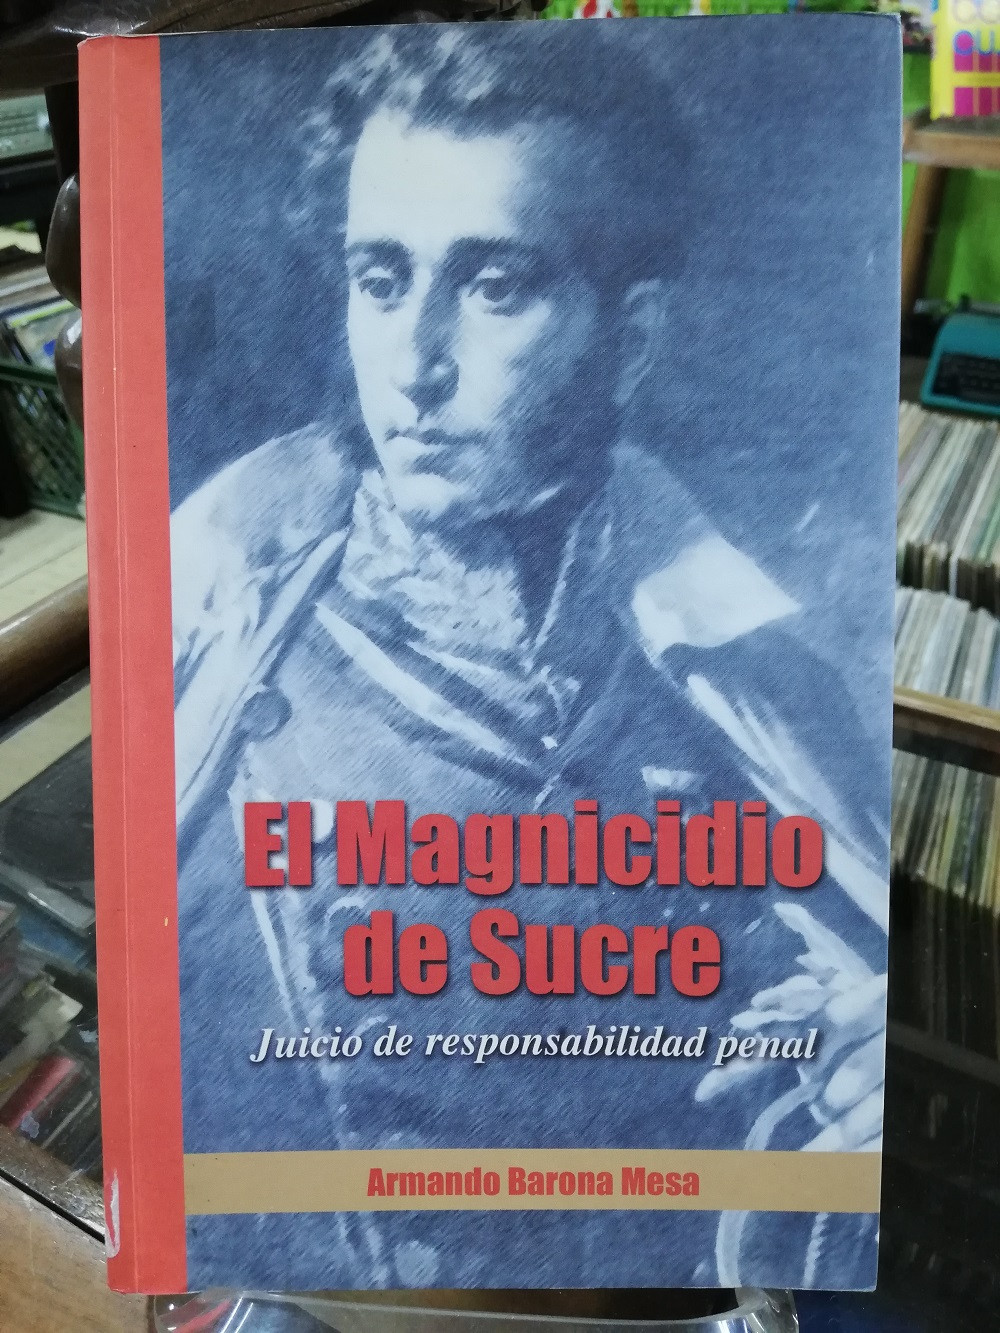 Imagen EL MAGNICIDIO DE SUCRE, JUICIO DE RESPONSABILIDAD PENAL - ARMANDO BARONA MESA 1